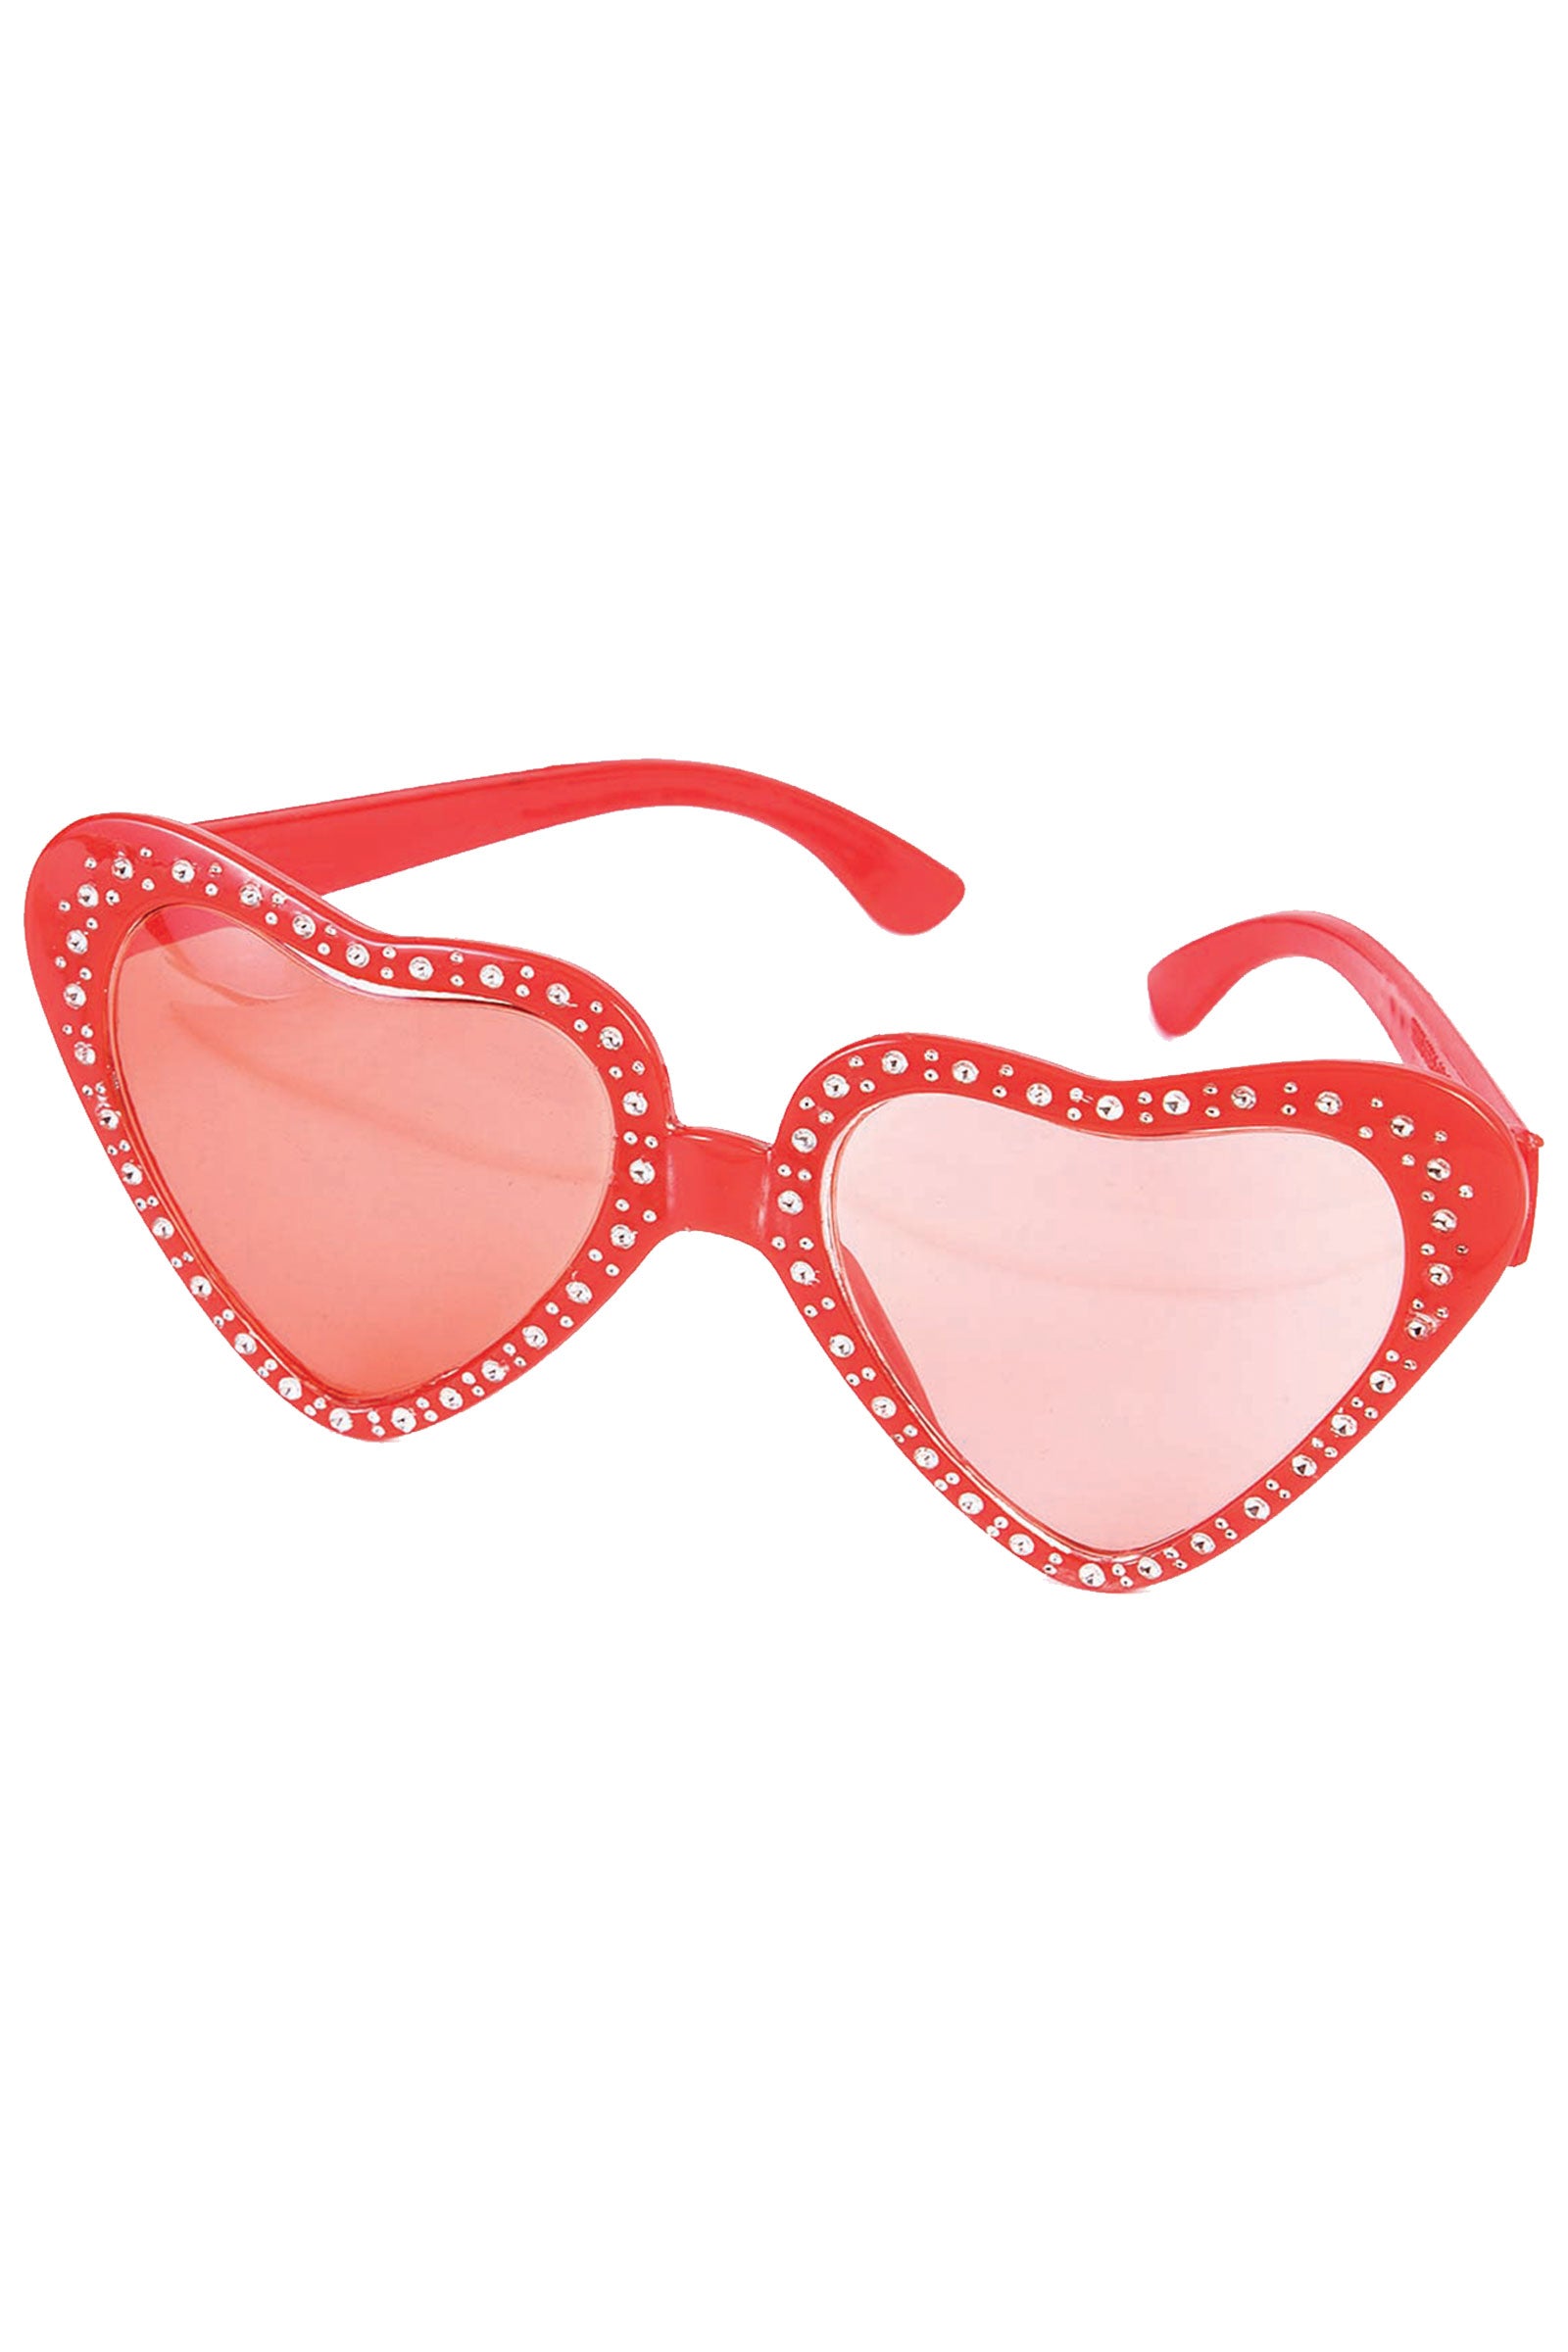 Valentine's Heart Glasses